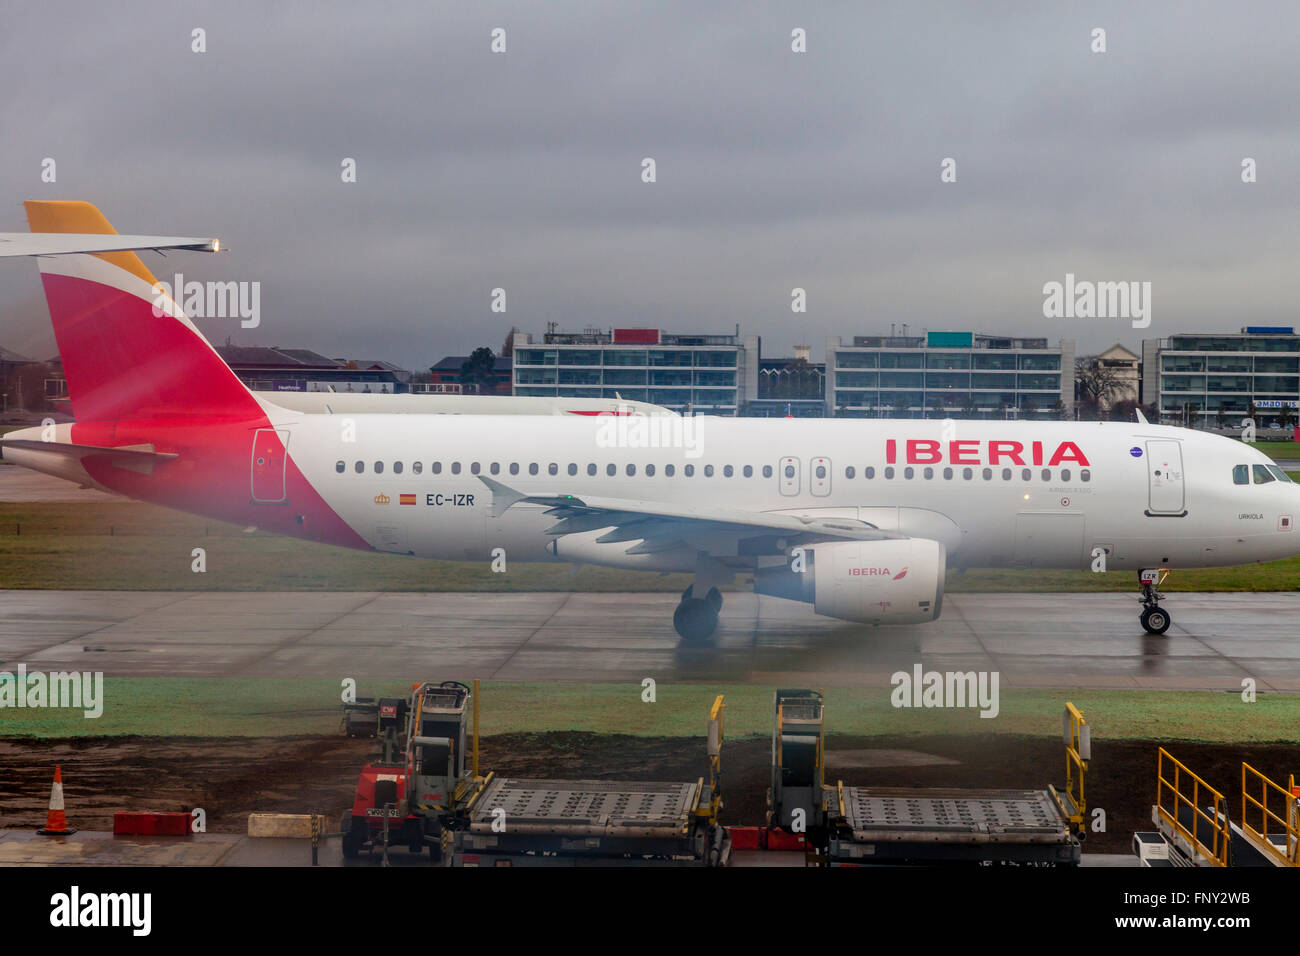 Ein Flug von der spanischen Fluggesellschaft IBERIA landet am Flughafen Heathrow, London, England Stockfoto